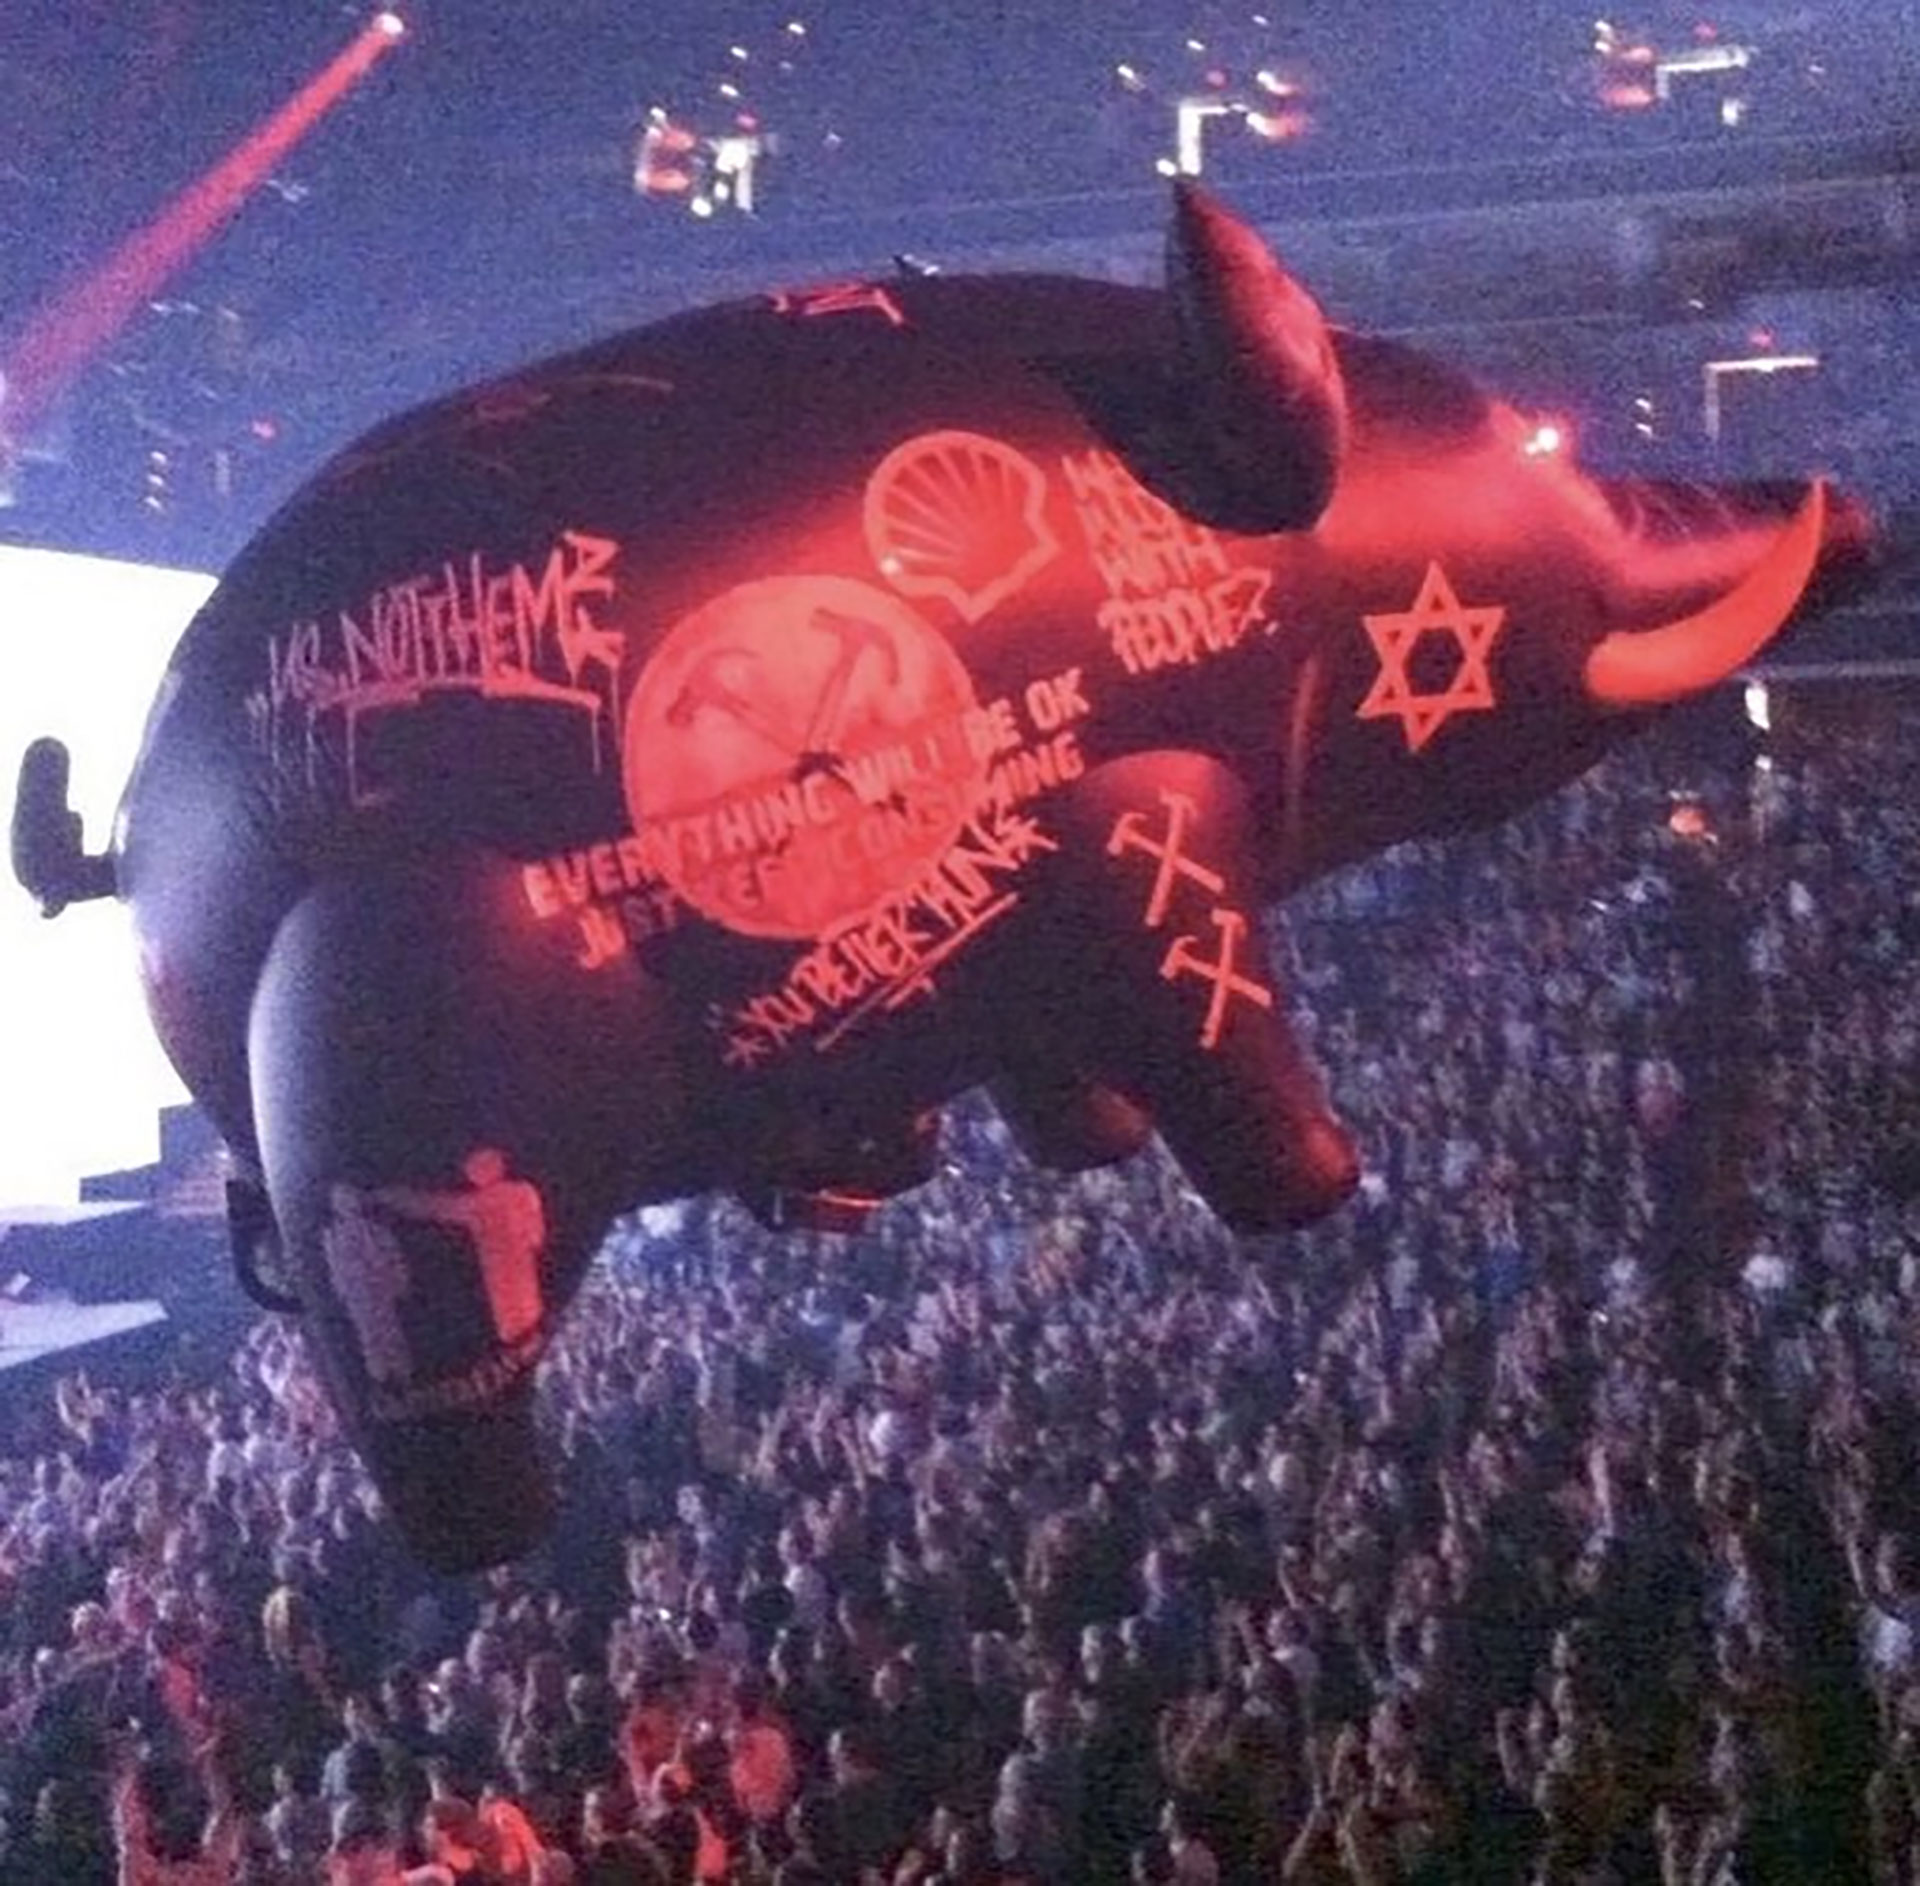 En el espectáculo también se incluyó un cerdo inflable gigante con diversos símbolos y palabras, como la estrella de David